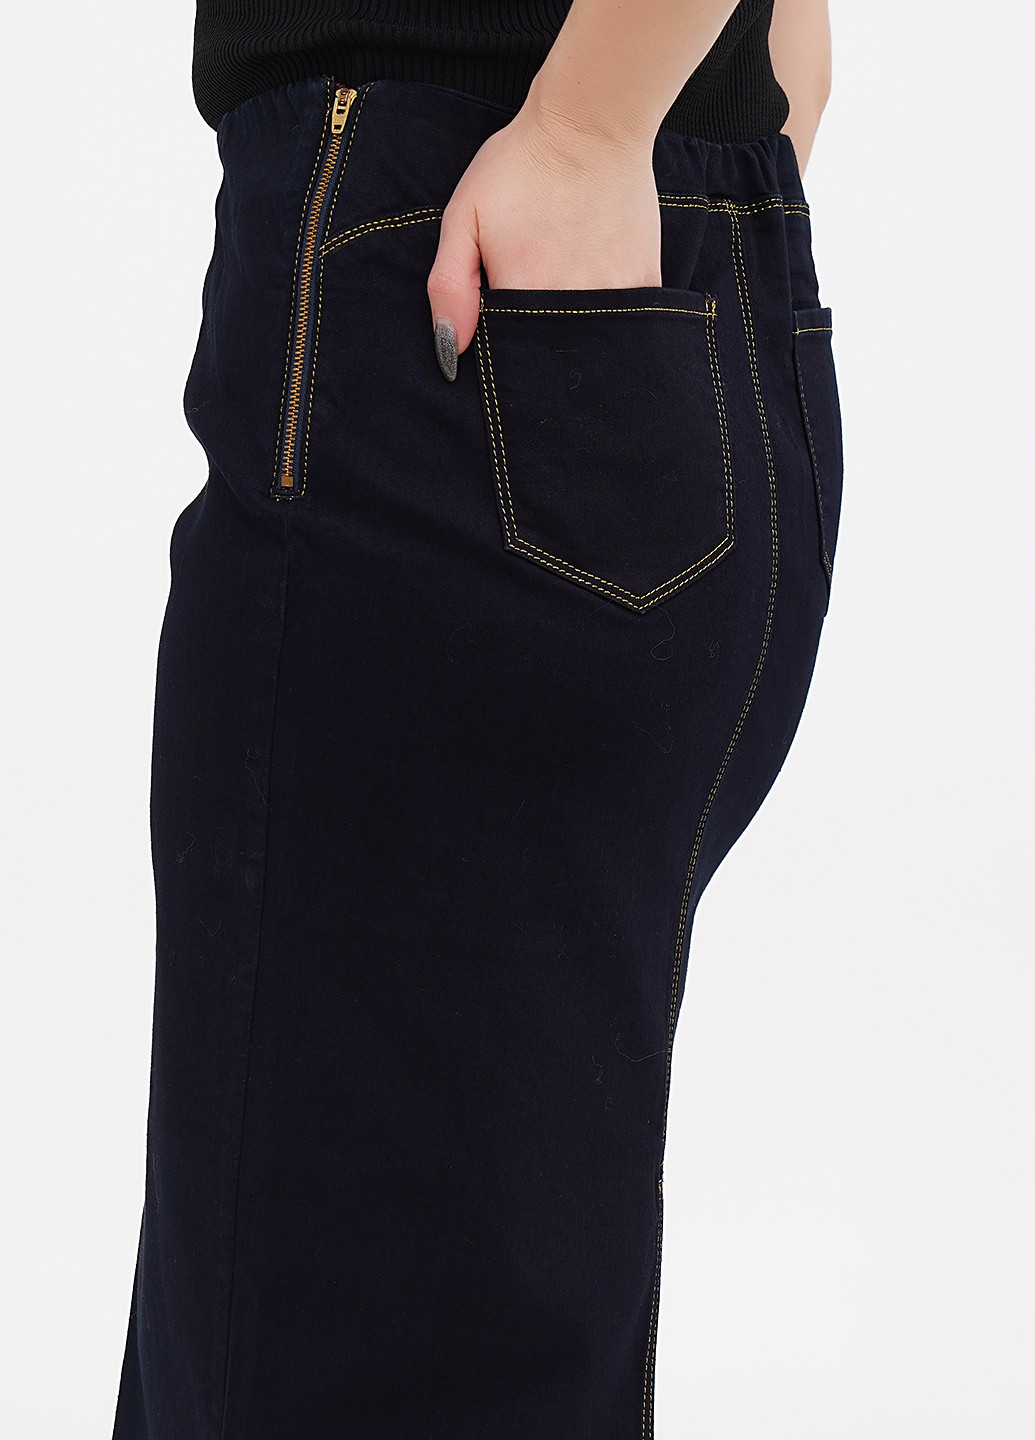 Темно-синяя джинсовая однотонная юбка Fiorella Rubino карандаш